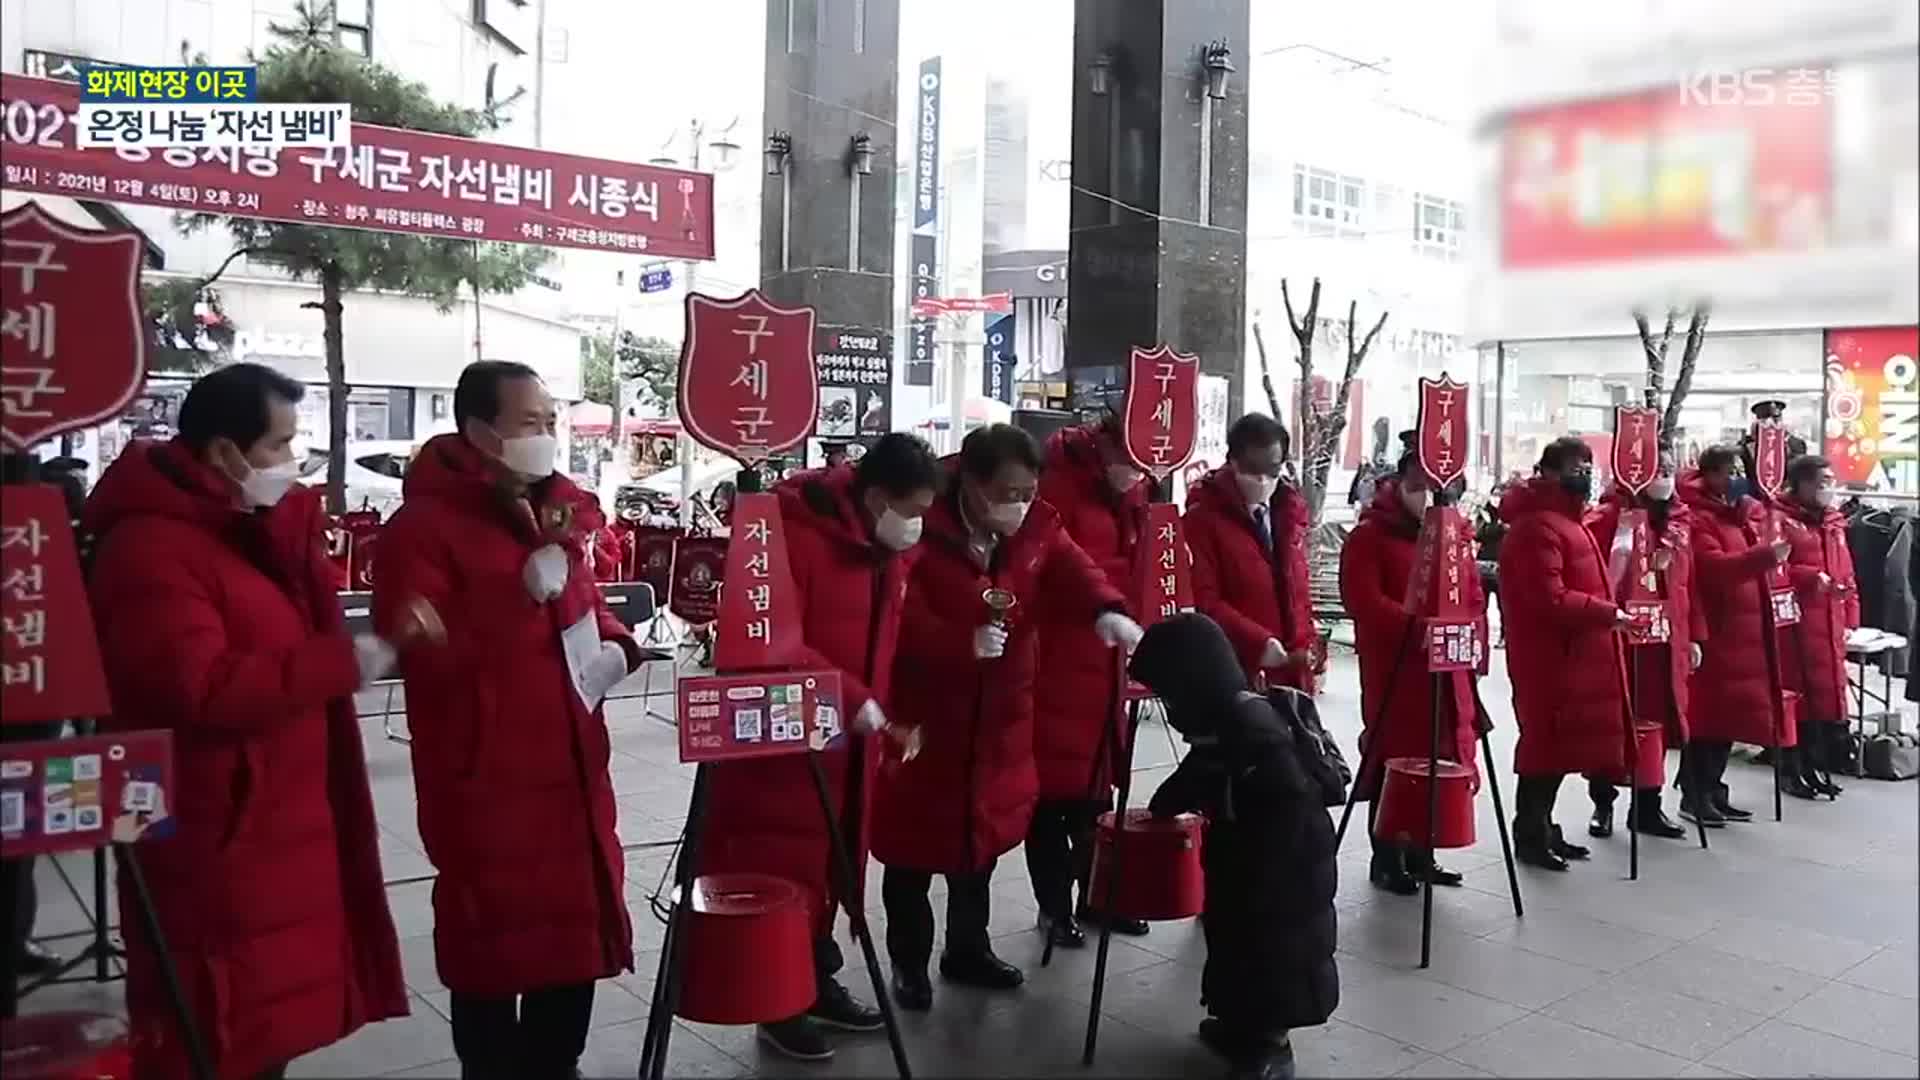 [화제현장 이곳] 나눔 운동 ‘93년’…구세군 ‘자선 냄비’ 모금 시작